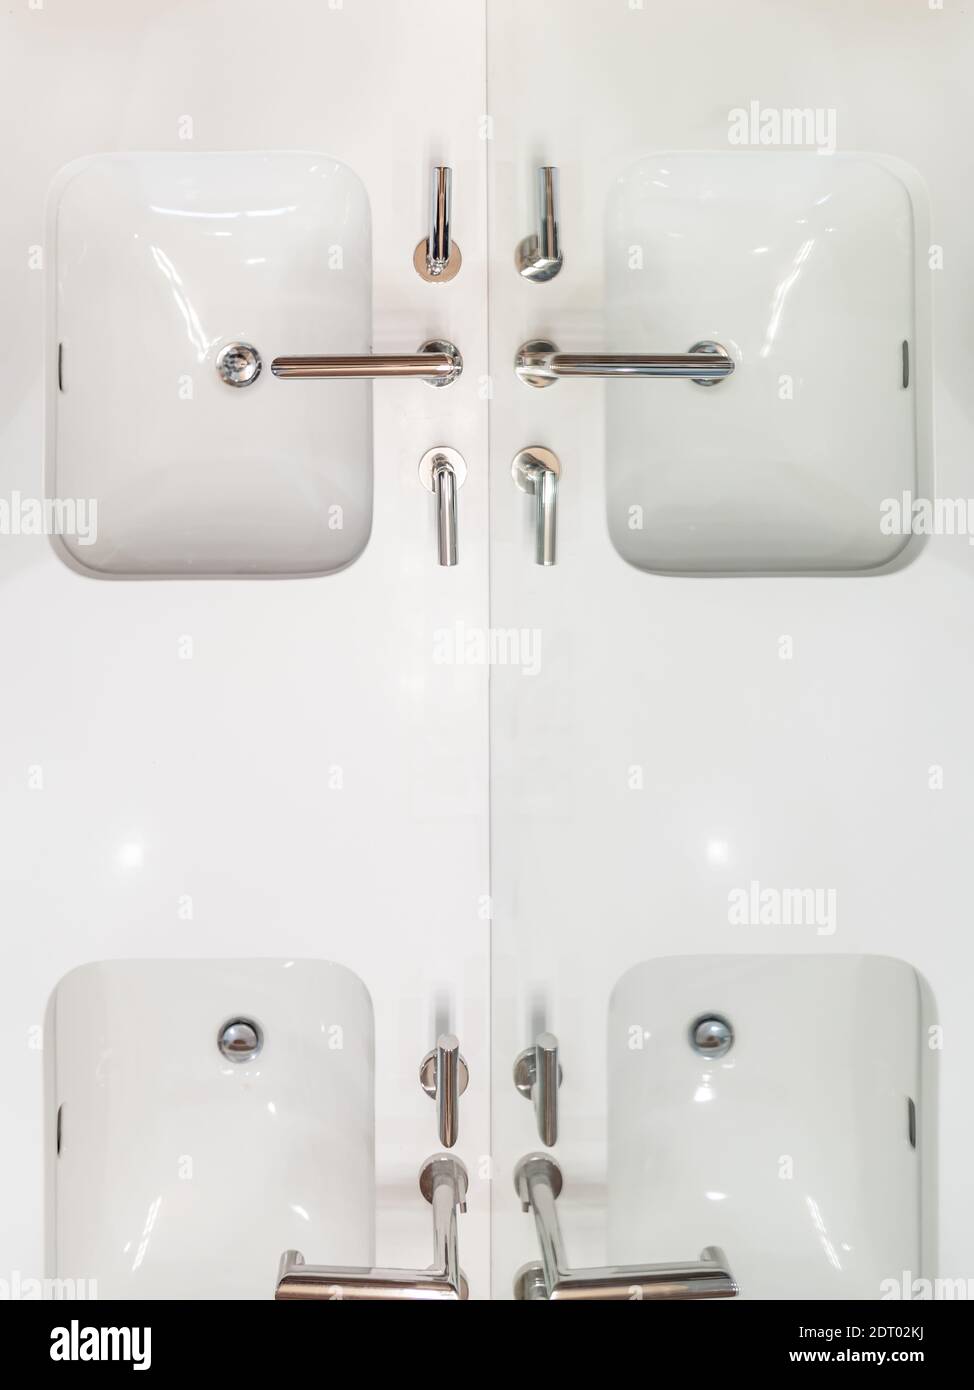 Zwei Badezimmer Waschbecken mit Reflexen in einem Spiegel Stockfoto